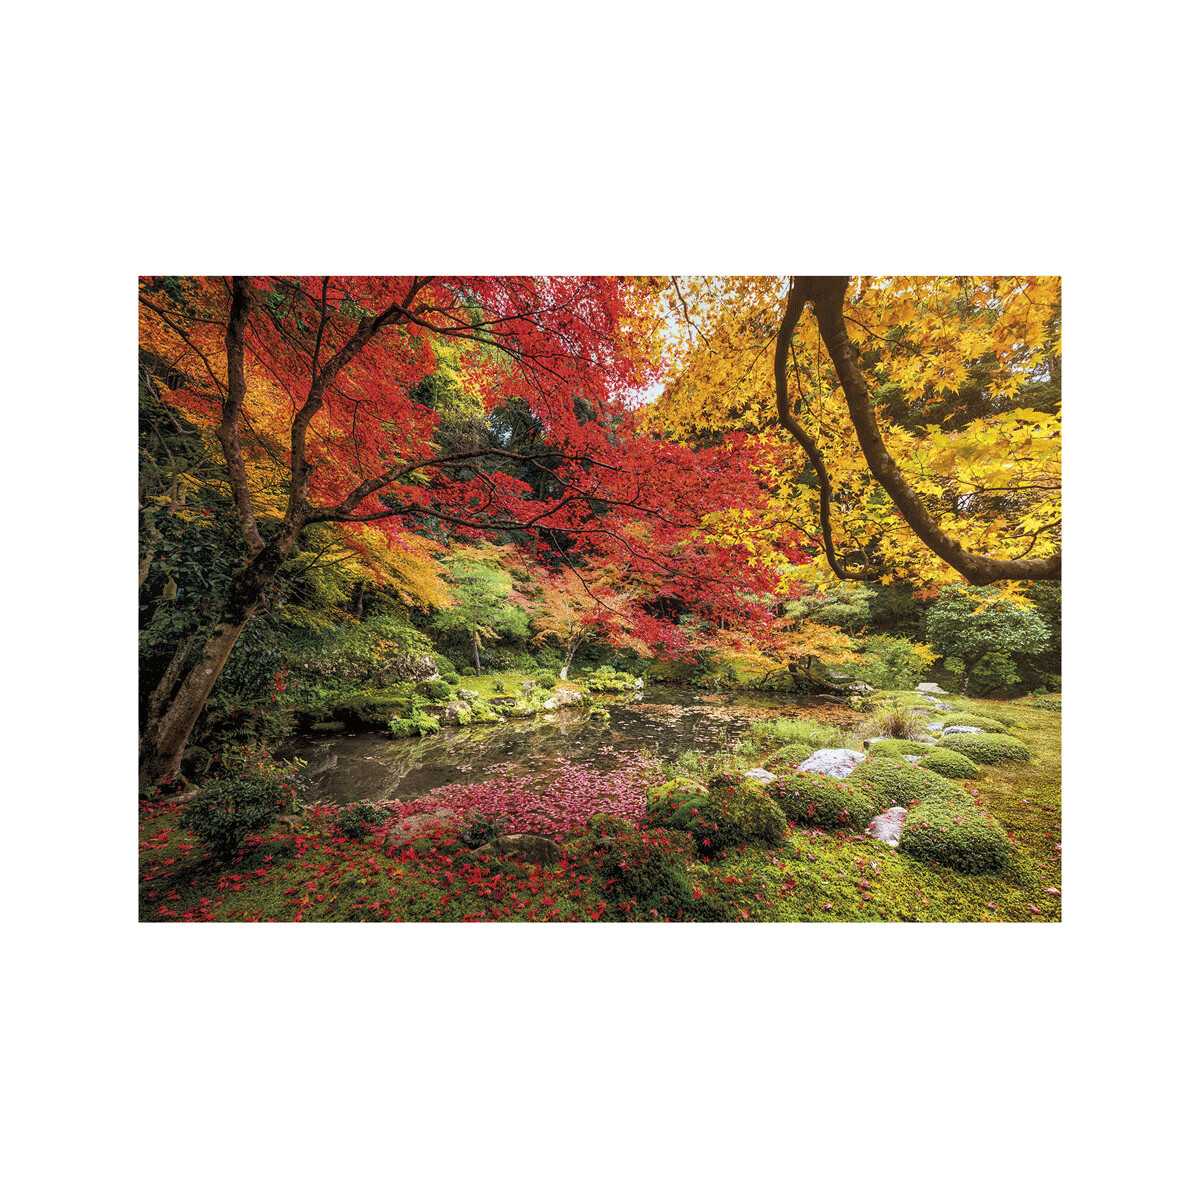 Clementoni - 31820 - puzzle 1500 hqc autumn park 59 x 84 cm - CLEMENTONI